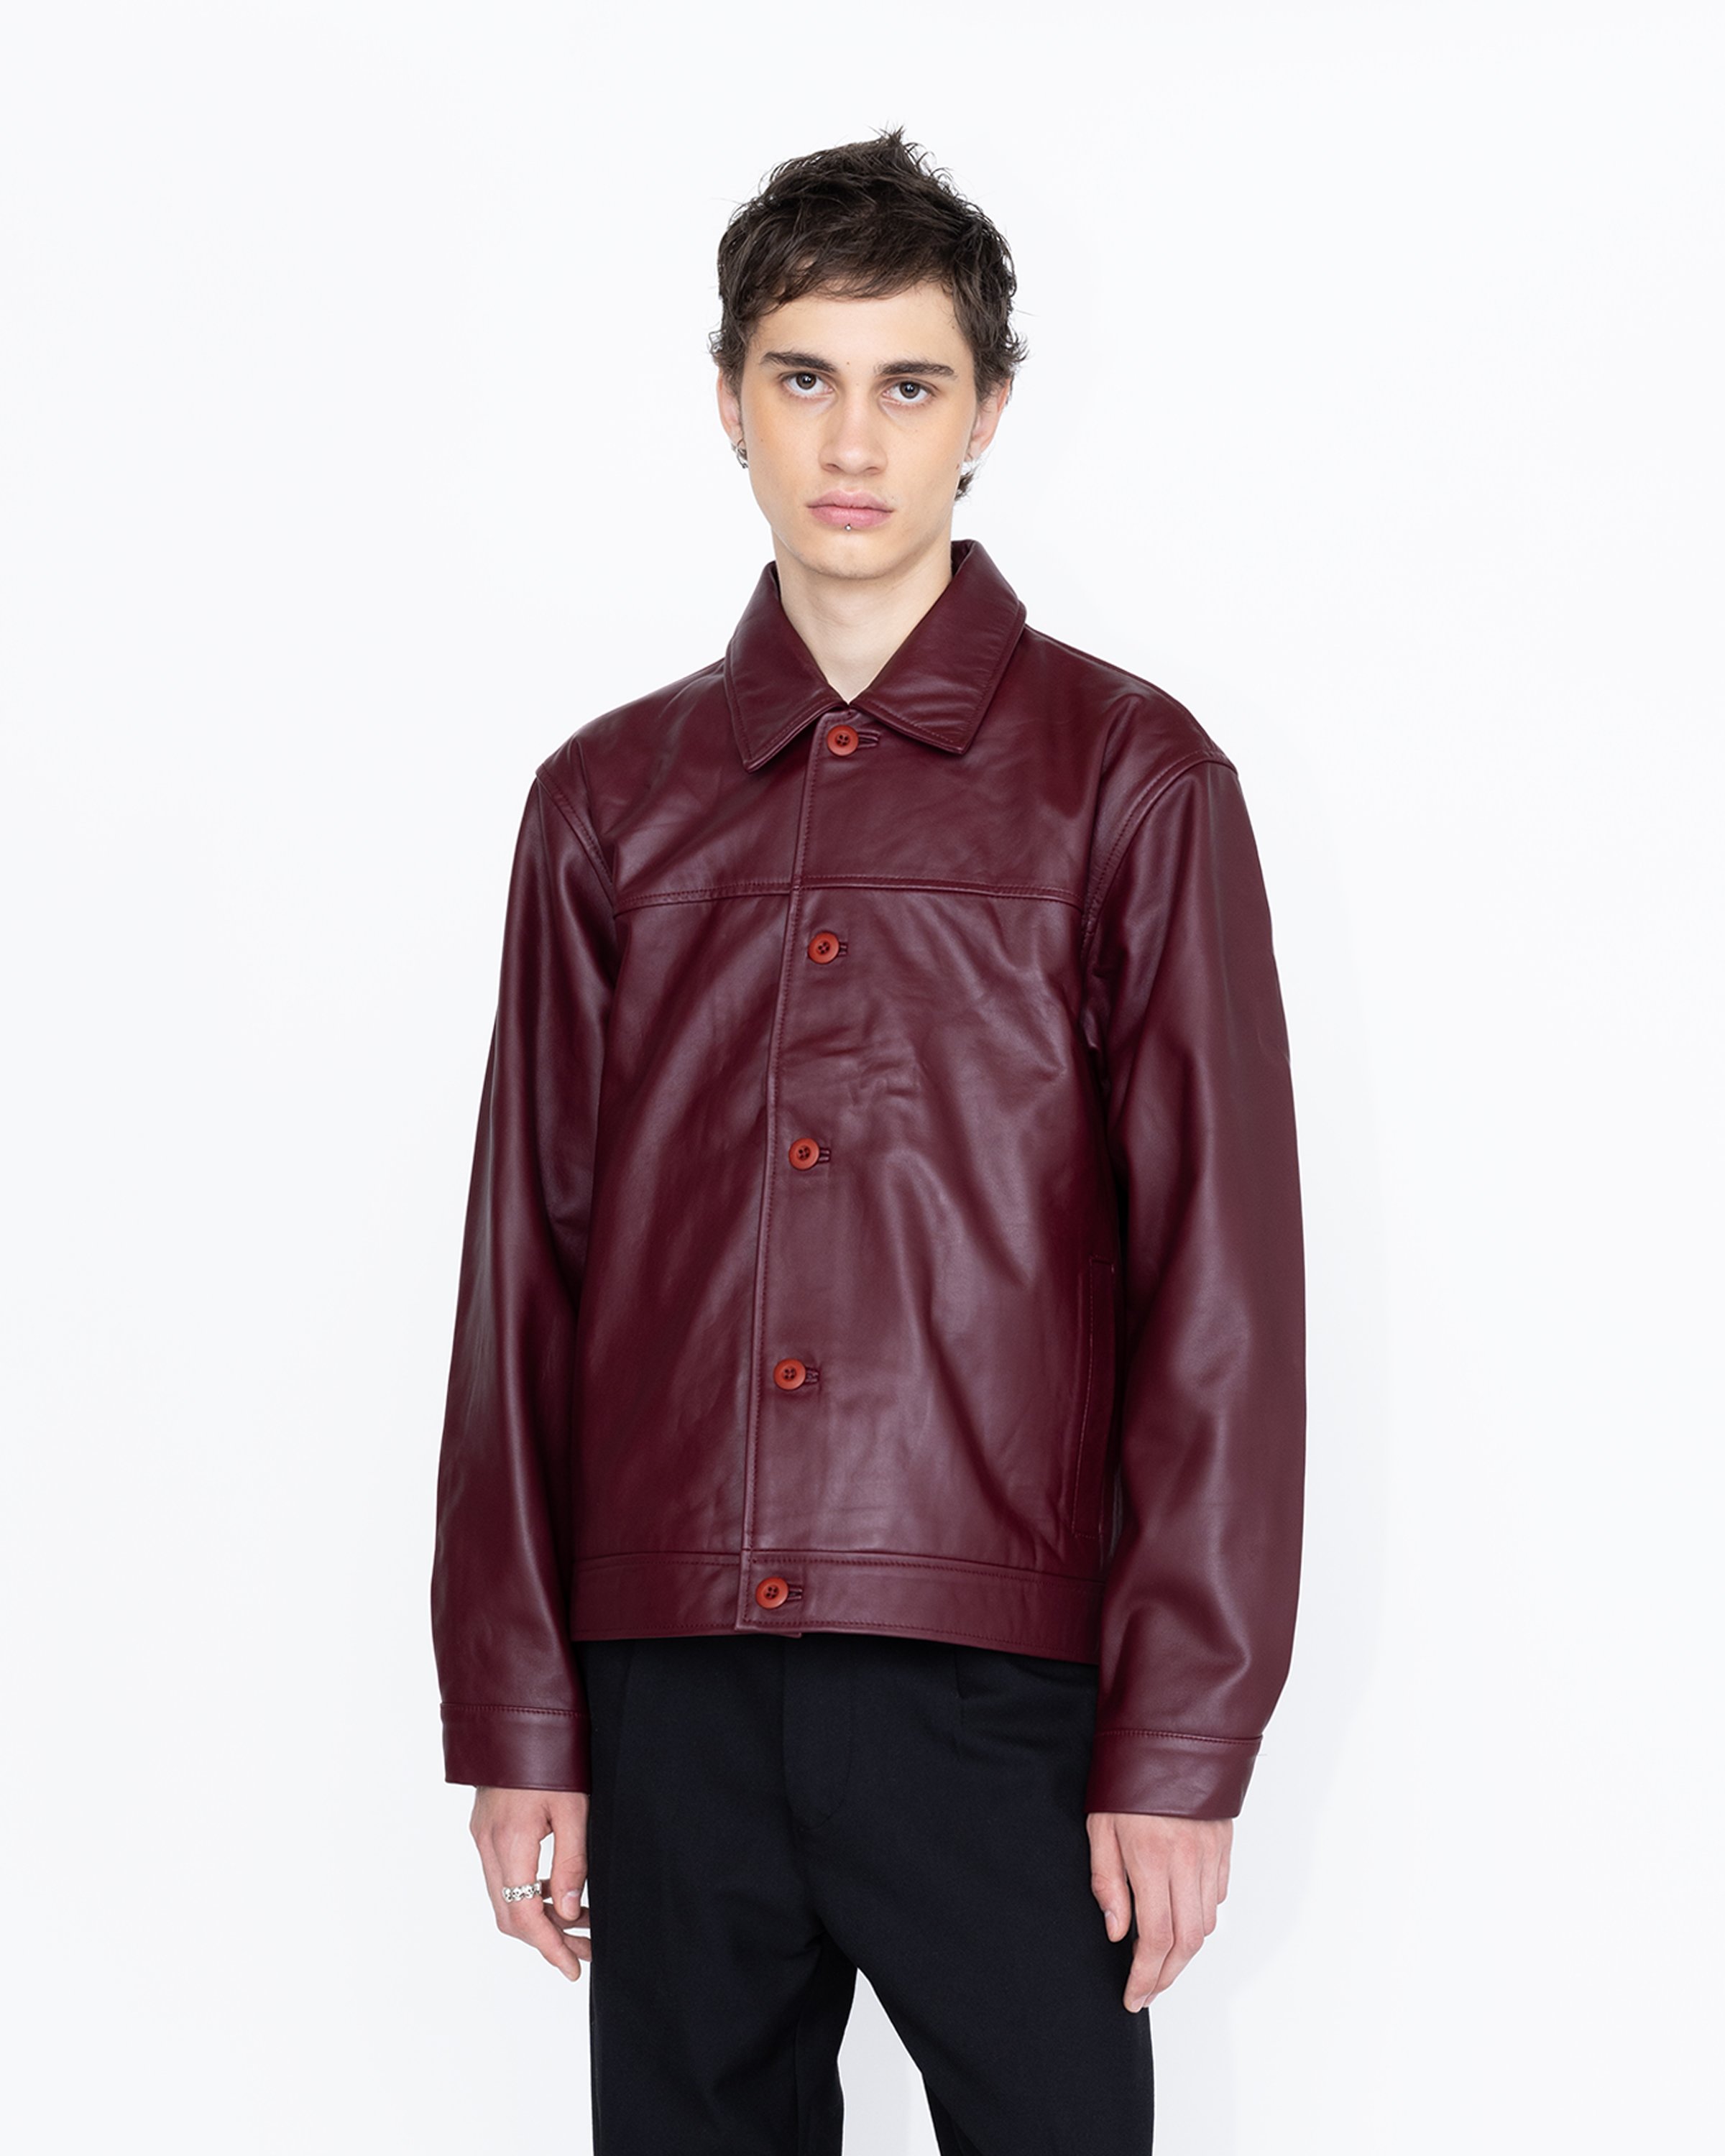 Highsnobiety HS05 - Leather Jacket Burgundy - Clothing - Red - Image 3